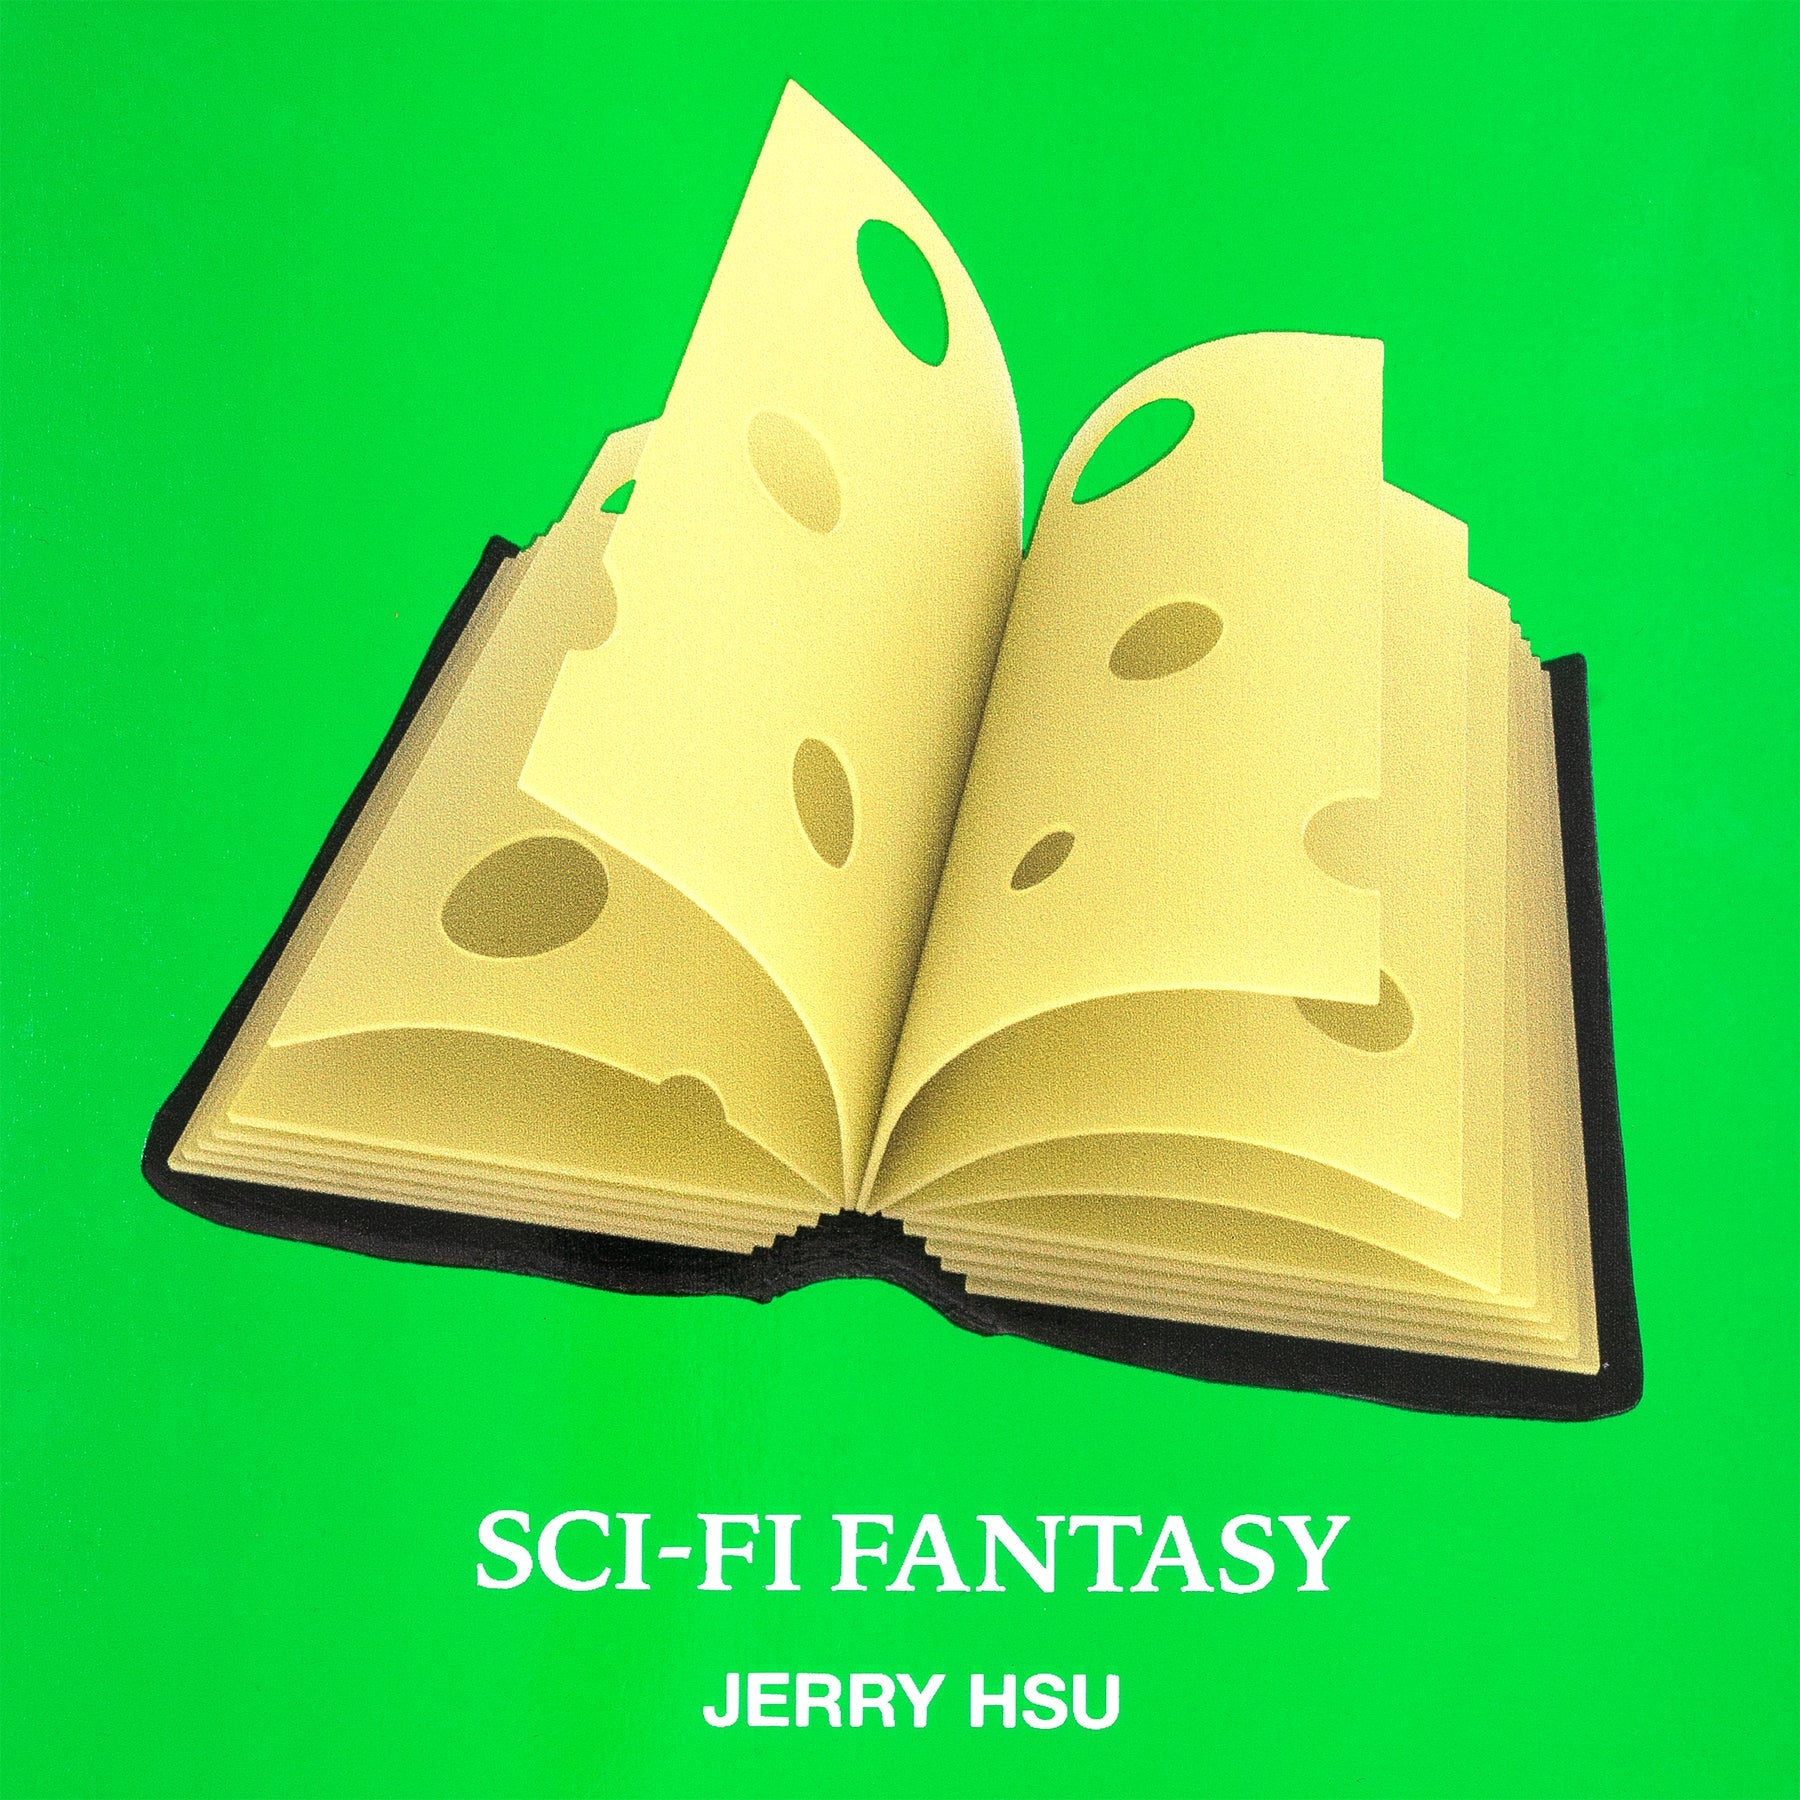 sci-fi fantasy jerry hsu swiss book deck 8.5"